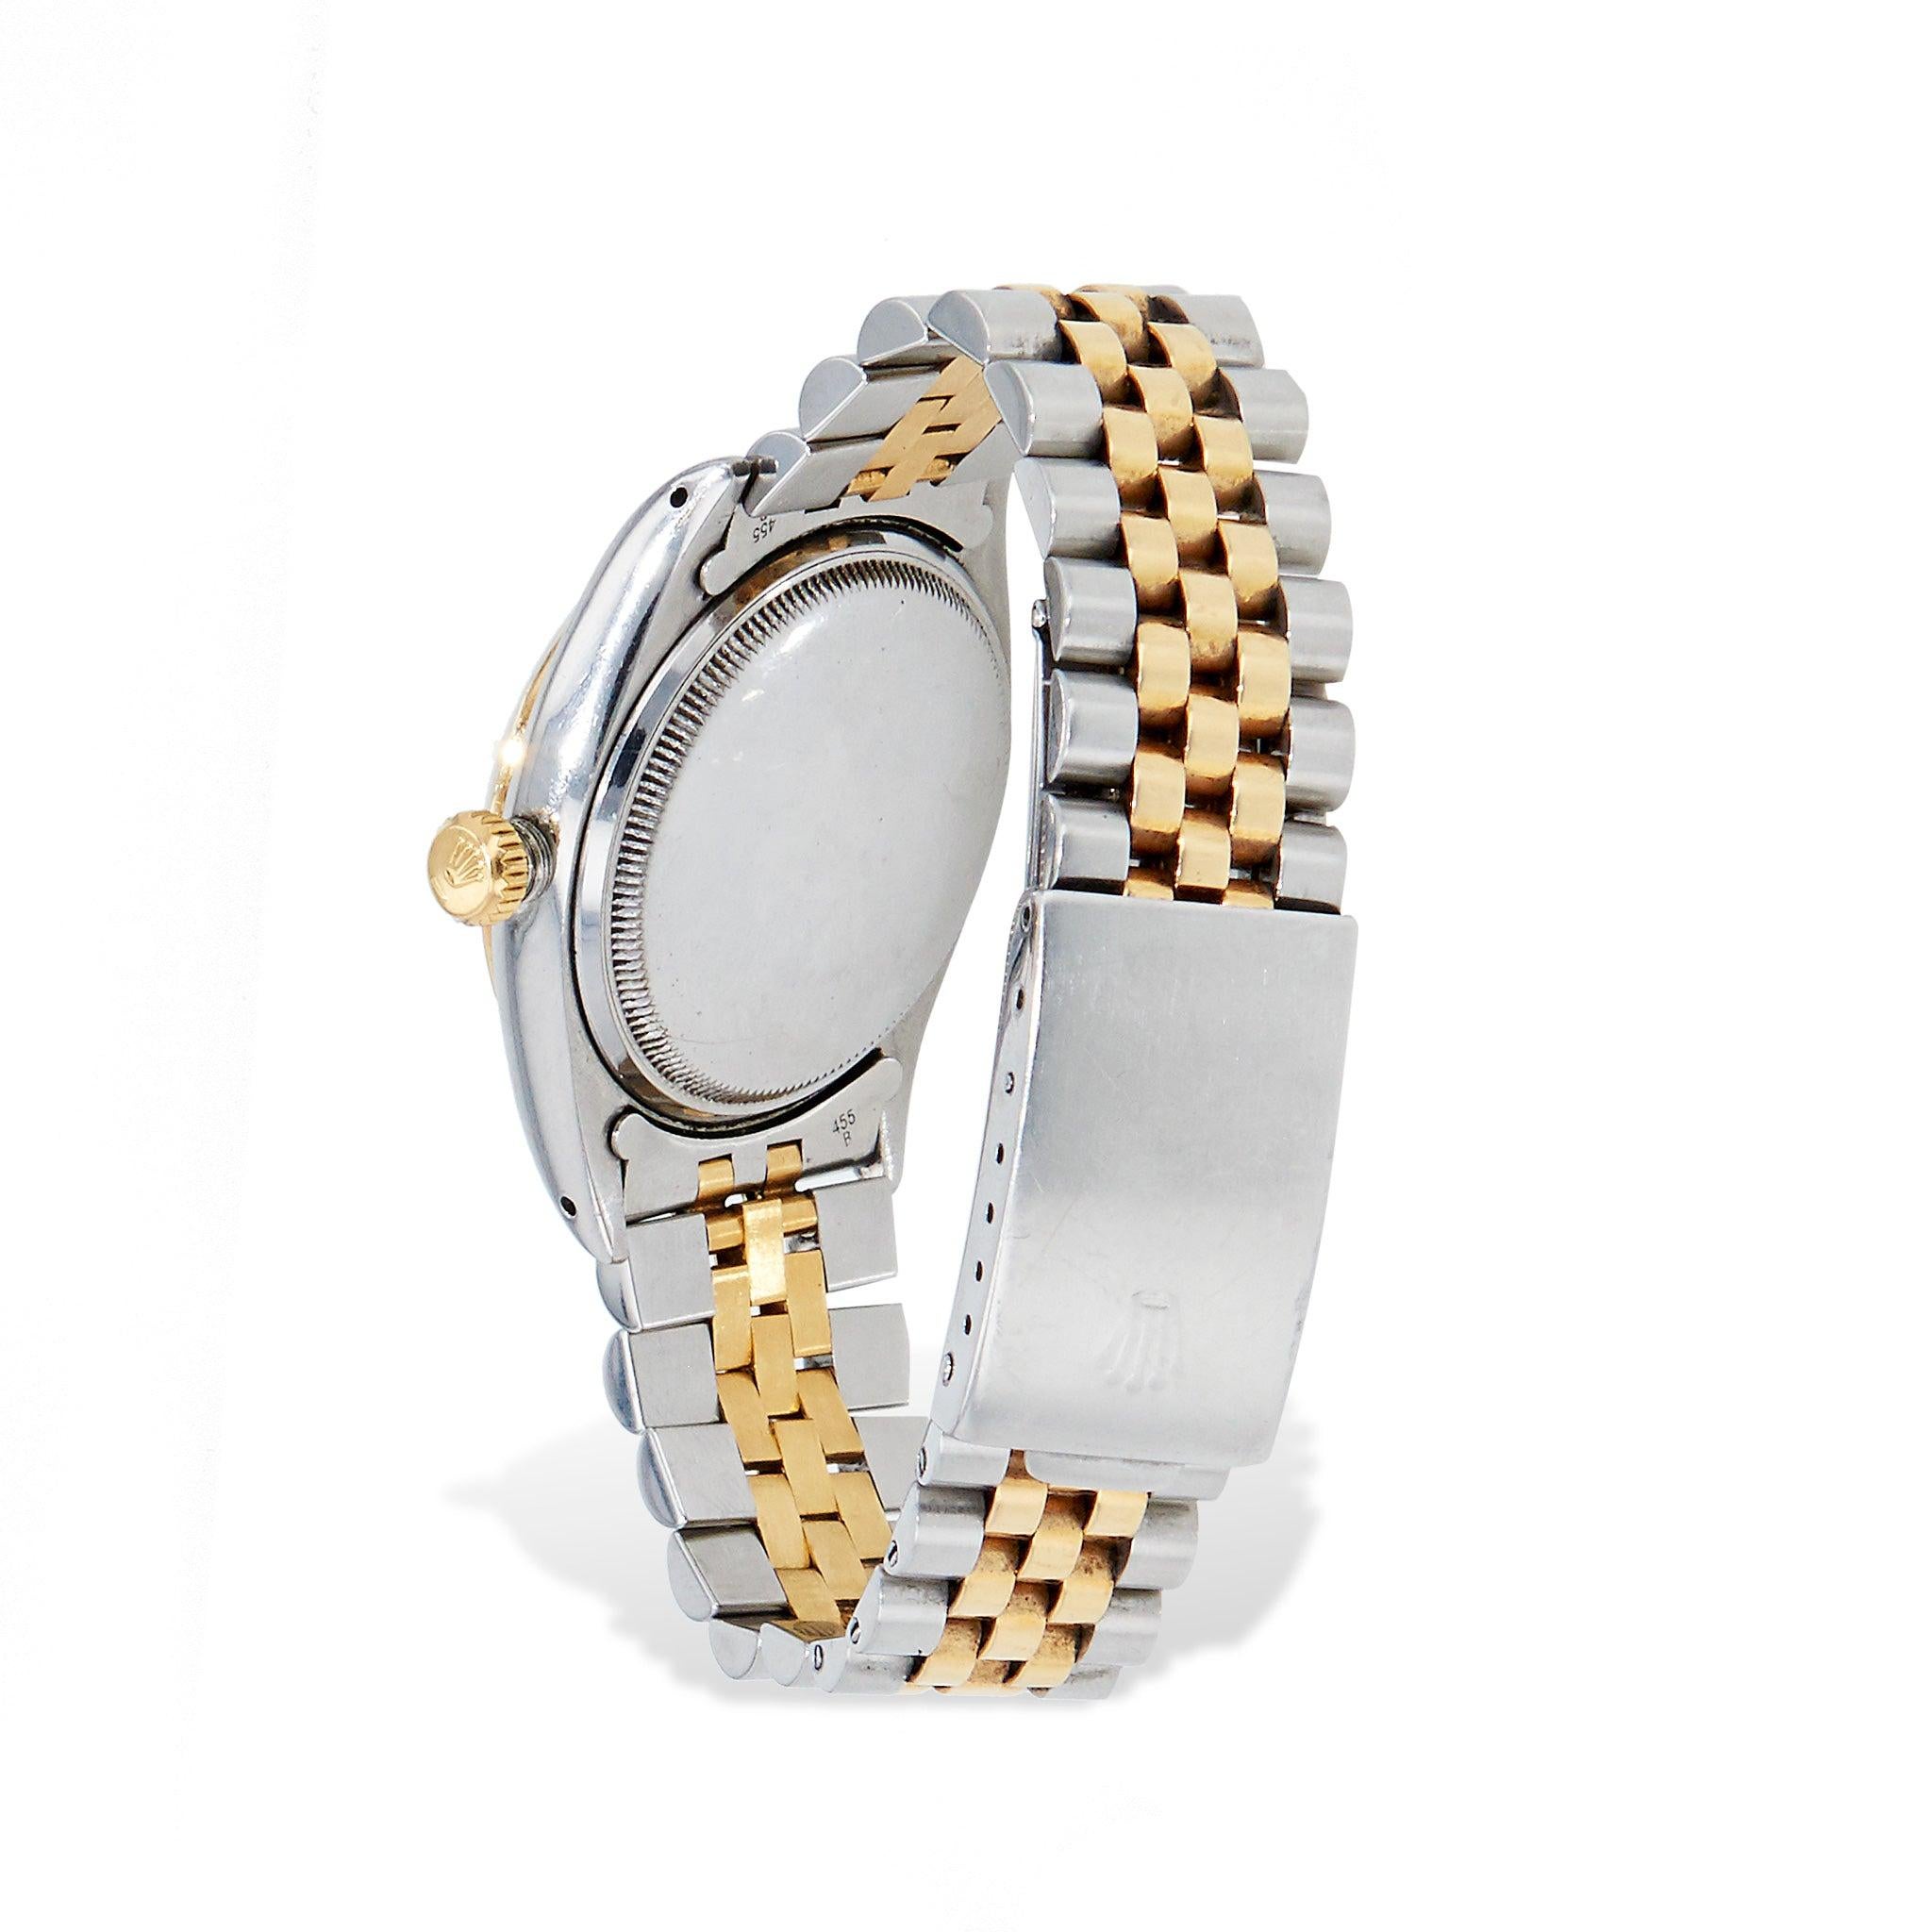 Découvrez l'élégance intemporelle avec cette superbe montre Rolex Datejust 36mm Estate. Whiting avec cadran blanc, bracelet bicolore et circa 1950. Modèle n° 6305 et n° de série 940770, ce garde-temps authentique respire la sophistication